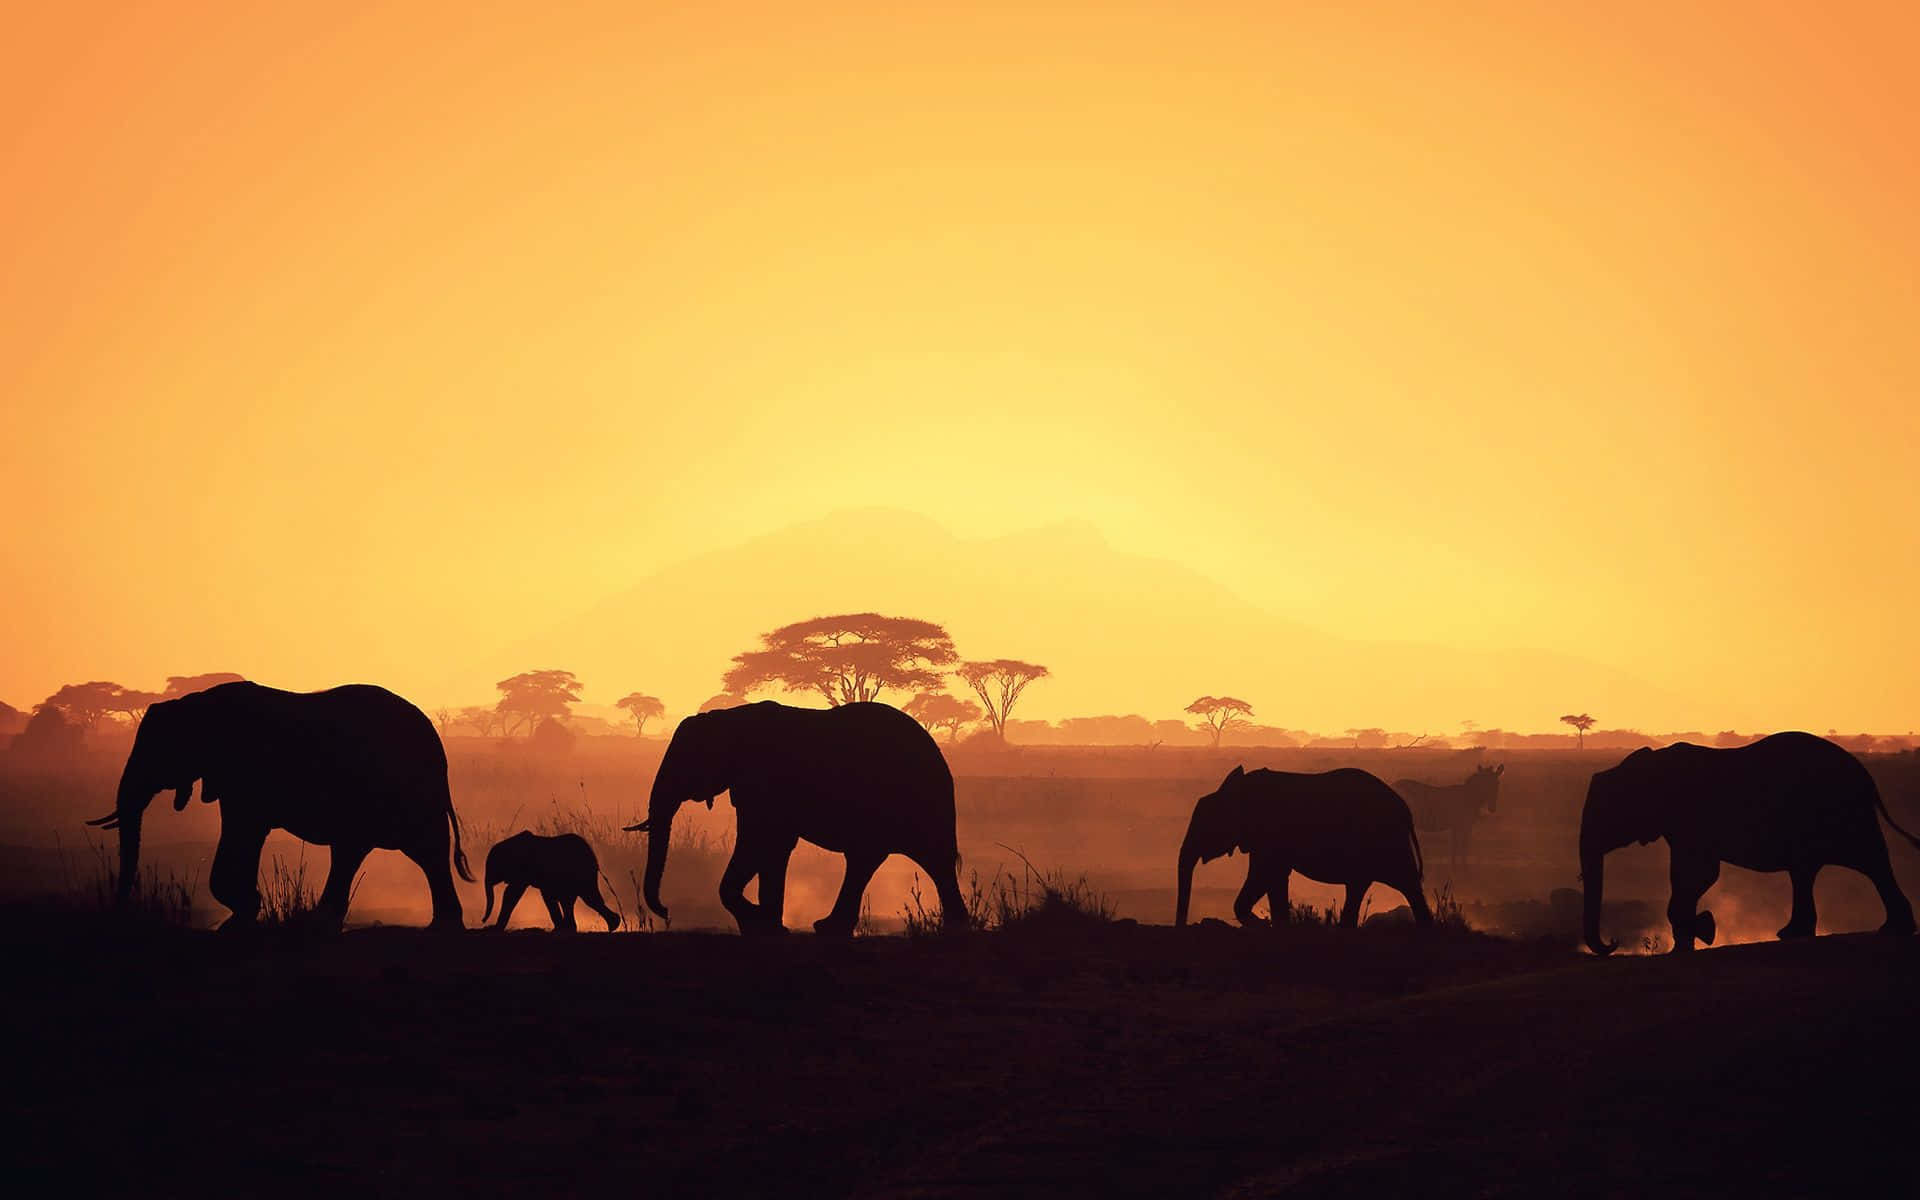 Tag med i det majestætiske syn af Afrika Wallpaper